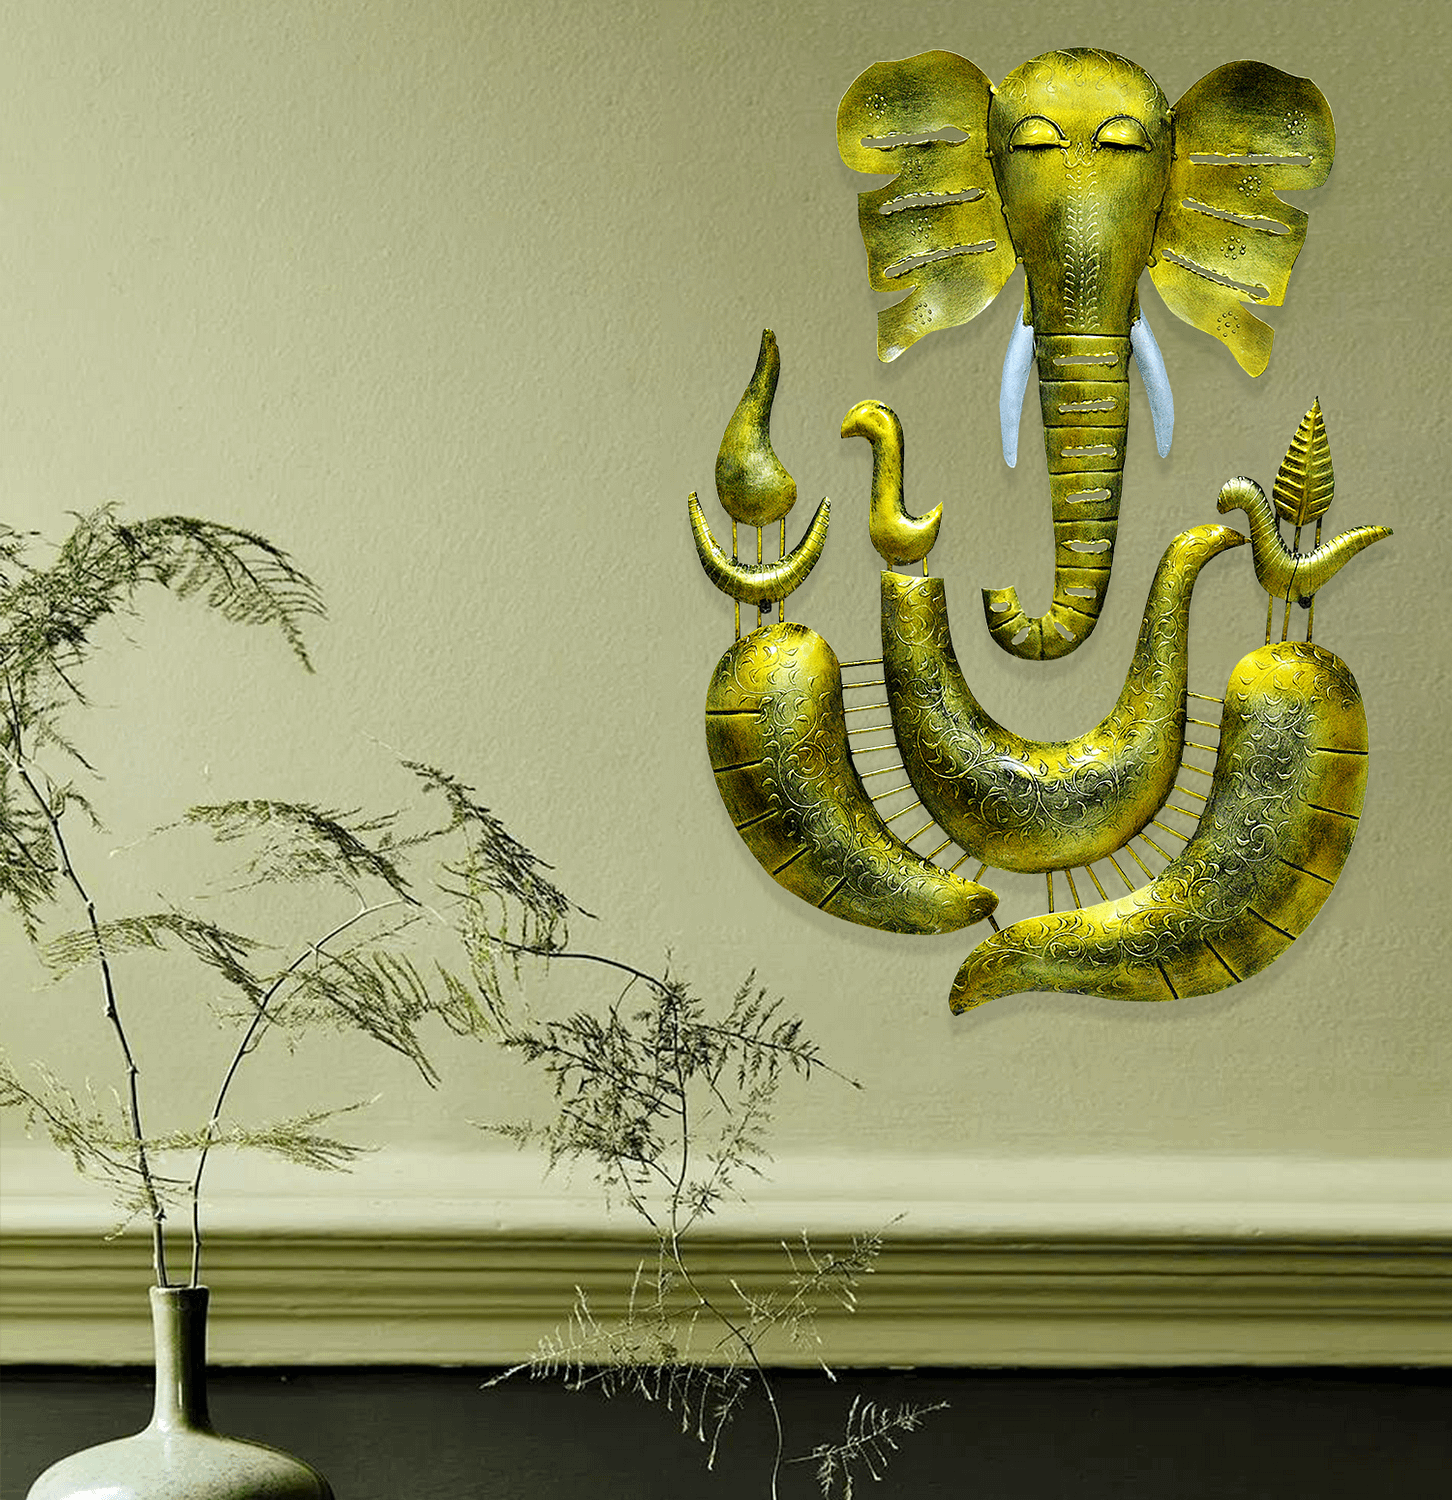 Metal Lord Ganesha Wall Decor Art With LED